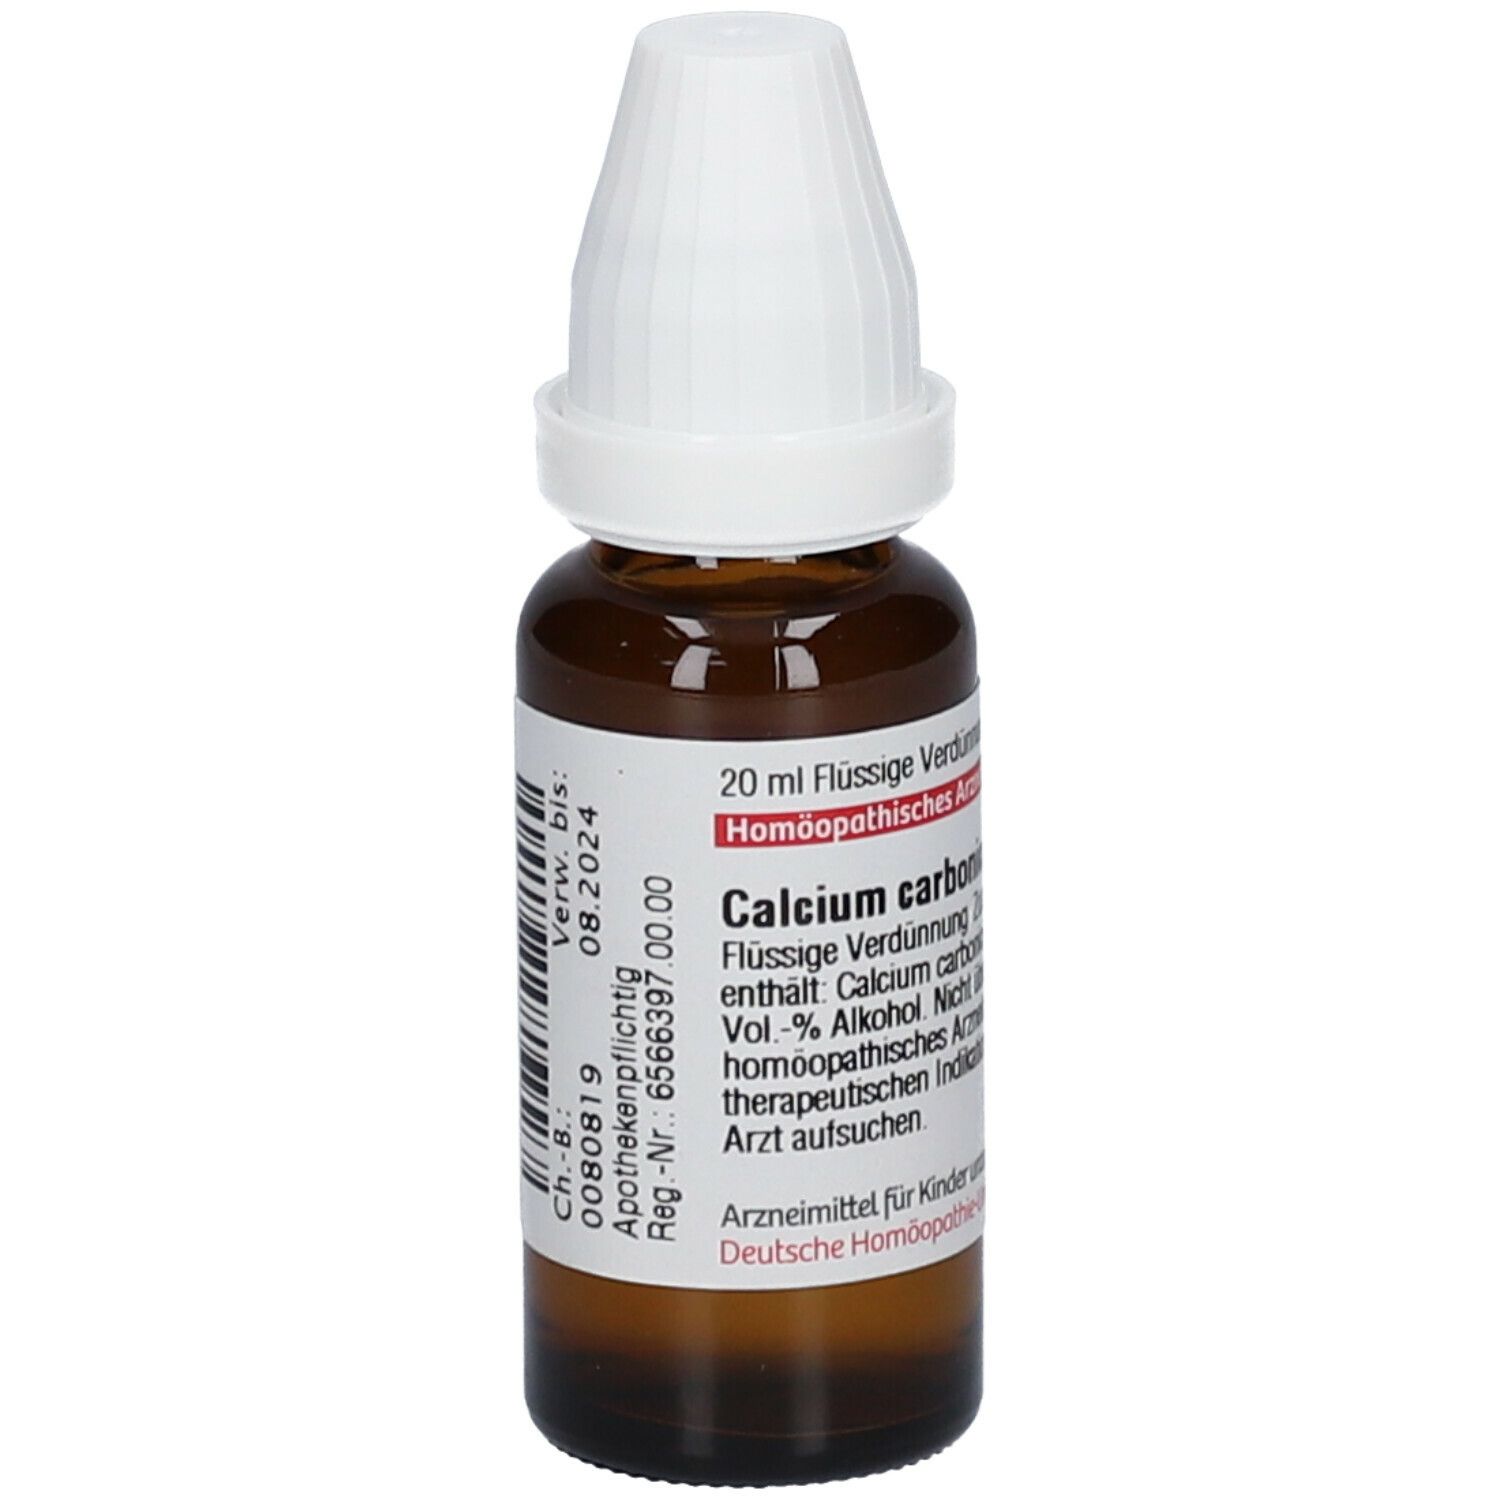 DHU Calcium Carbonicum Hahnemanni C200